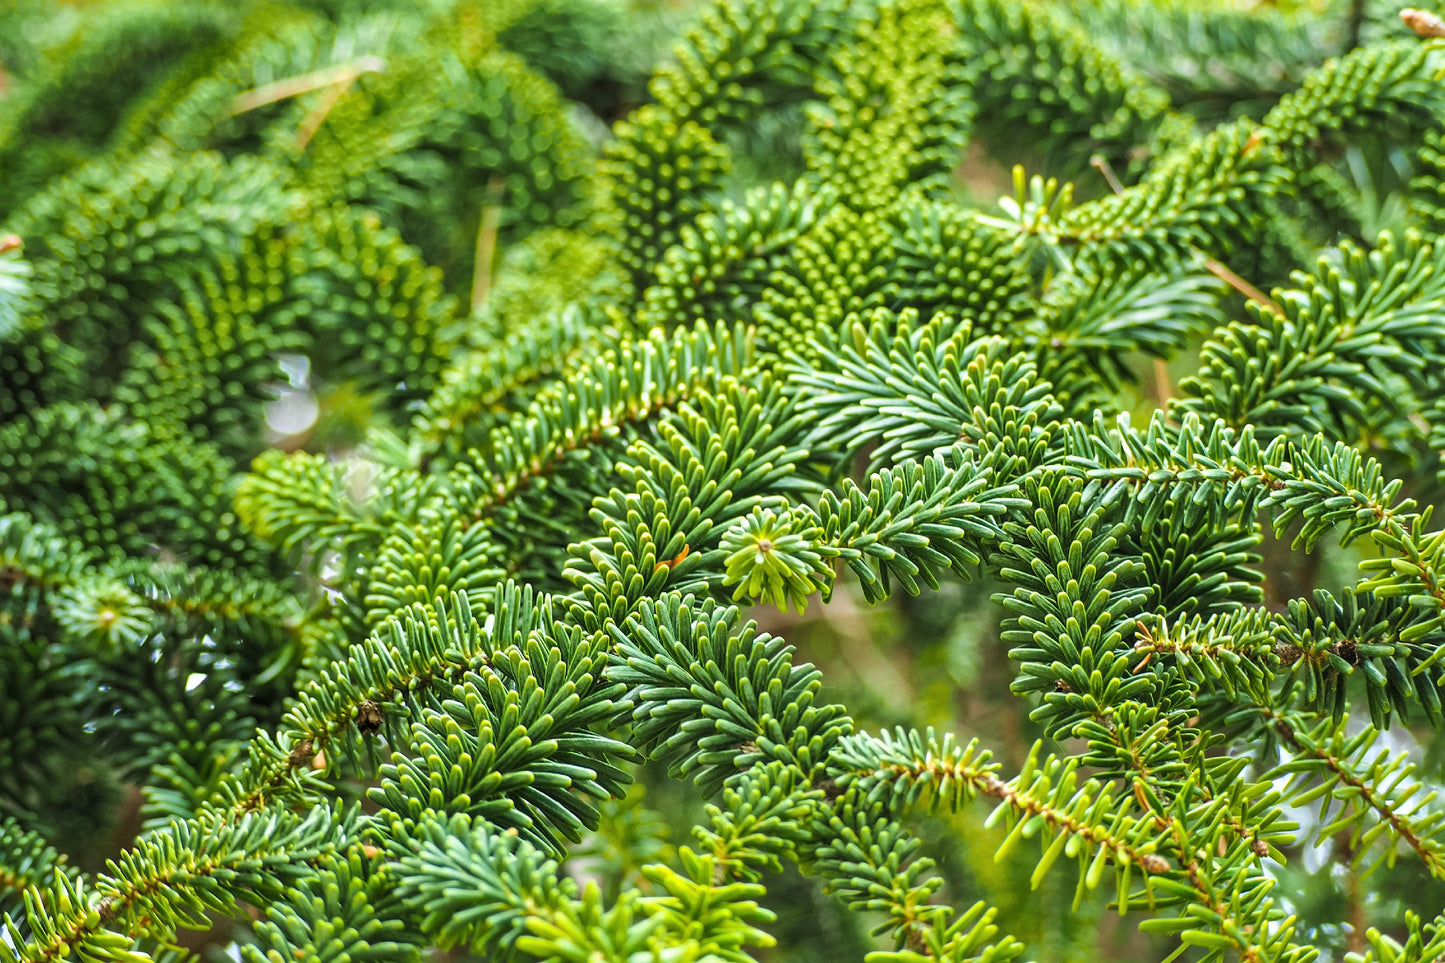 20 FRASER FIR Tree Abies Fraseri Christmas Tree Southern Balsam Fir Native Evergreen Seeds